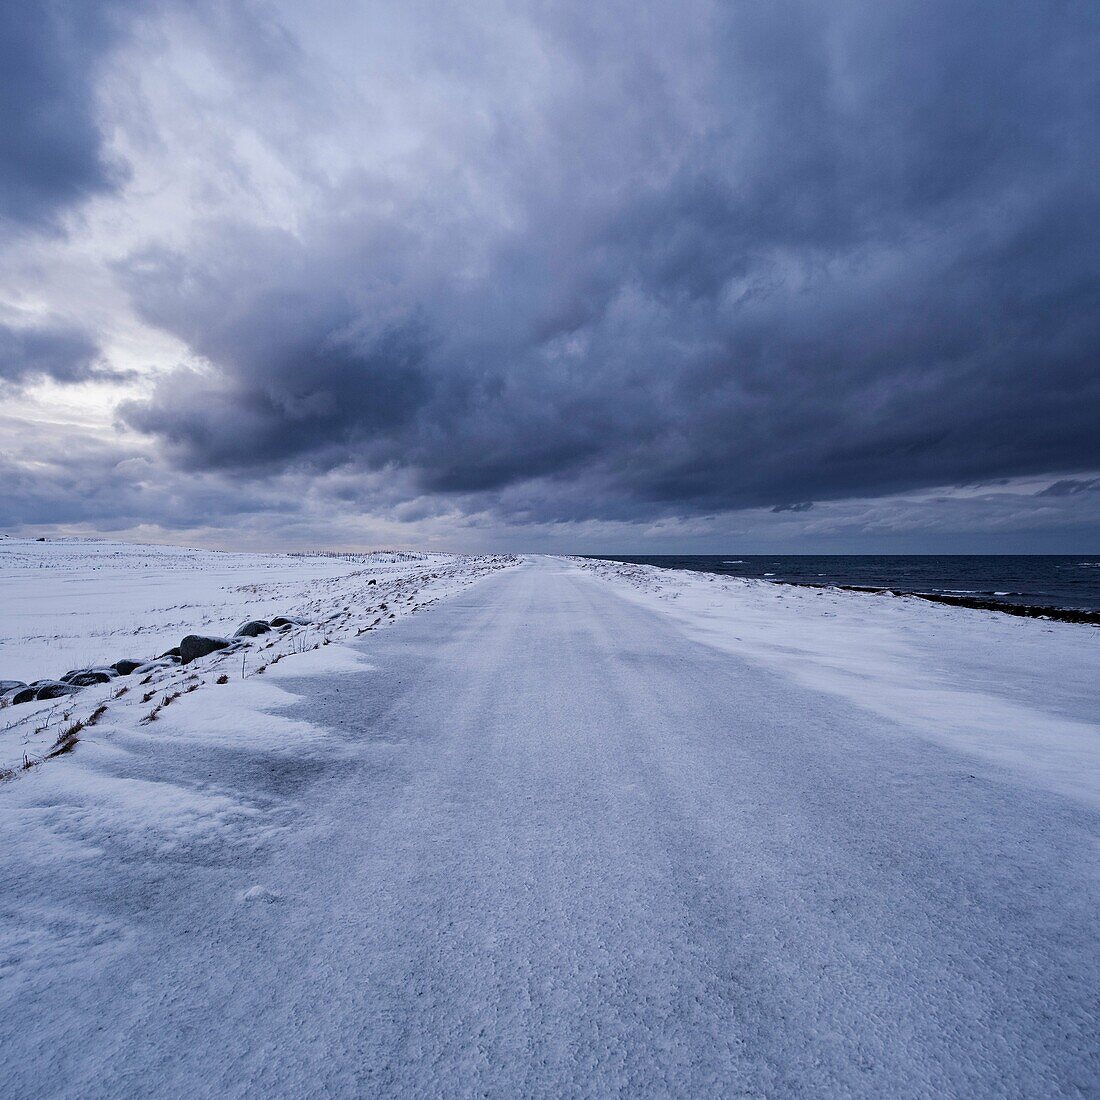 Snow covered road, Eggum, Vestvågøy, Lofoten islands, Norway